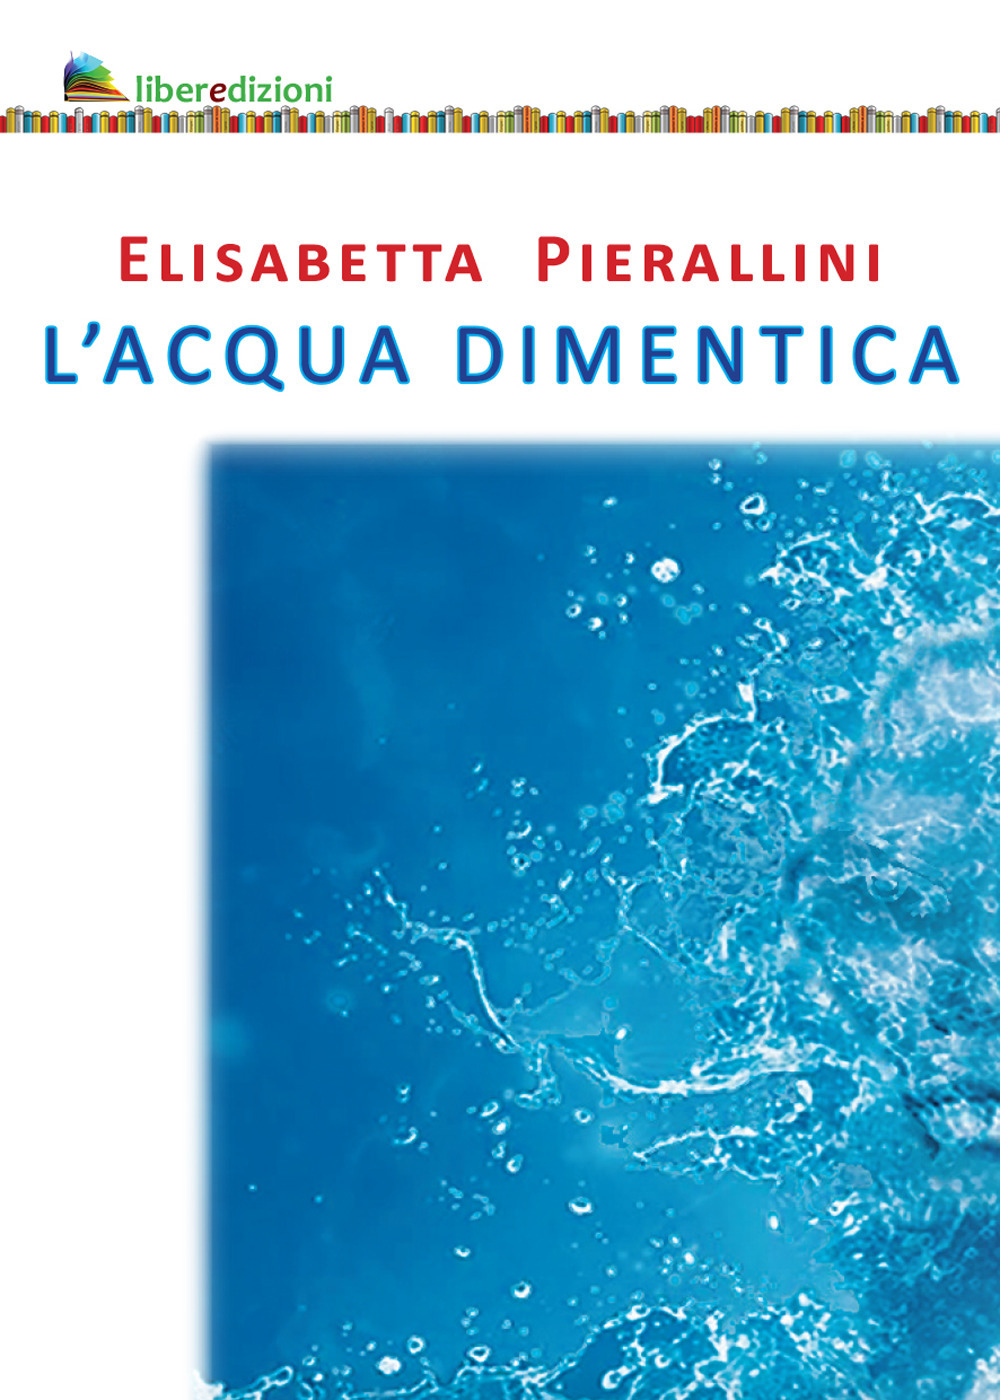 Libri Elisabetta Pierallini - L' Acqua Dimentica NUOVO SIGILLATO, EDIZIONE DEL 08/01/2023 SUBITO DISPONIBILE